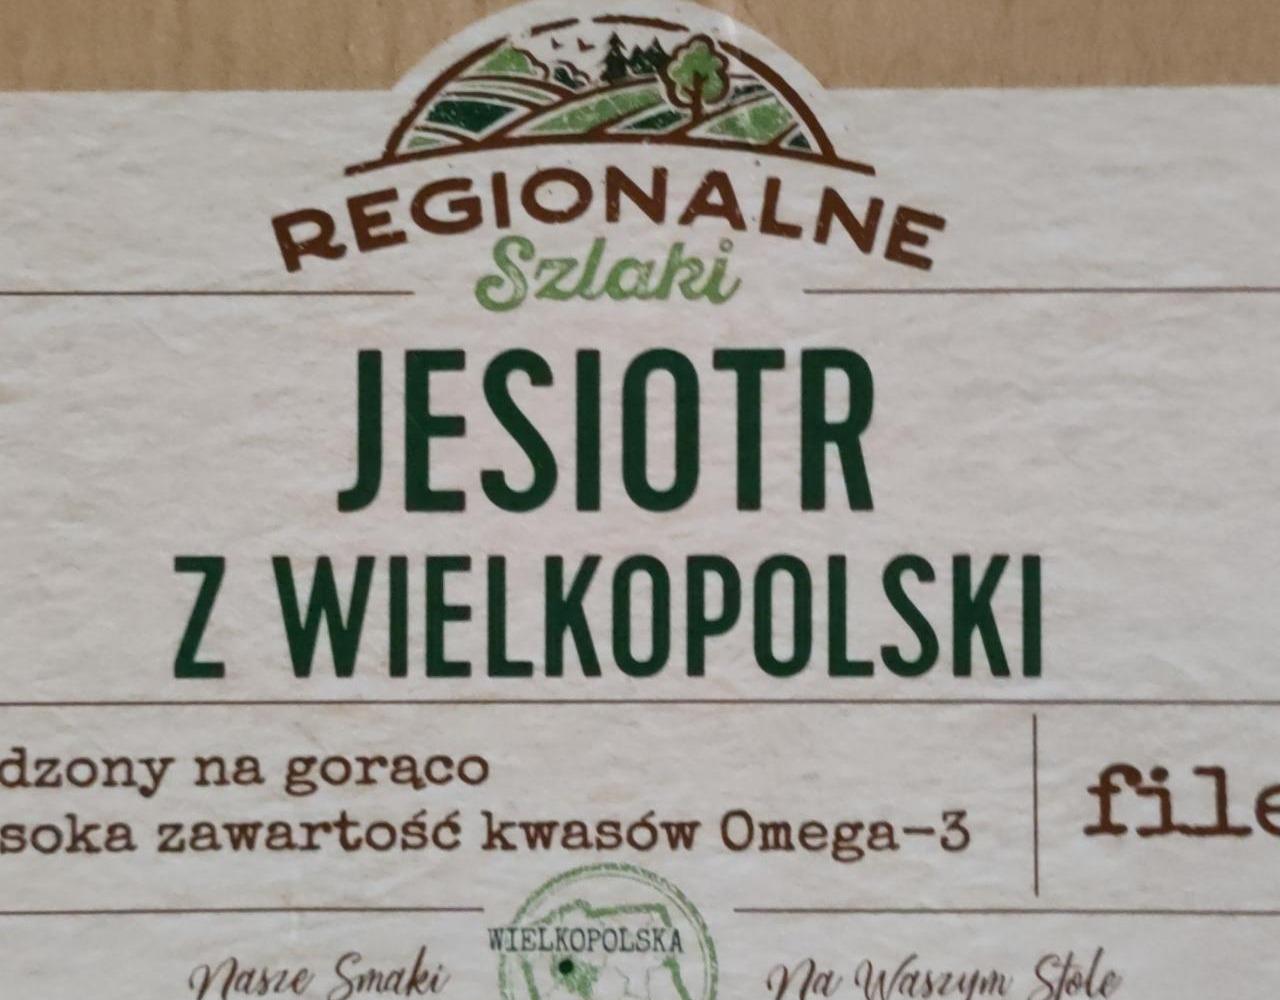 Zdjęcia - Jesiotr z wielkopolski Regionalne Szlaki